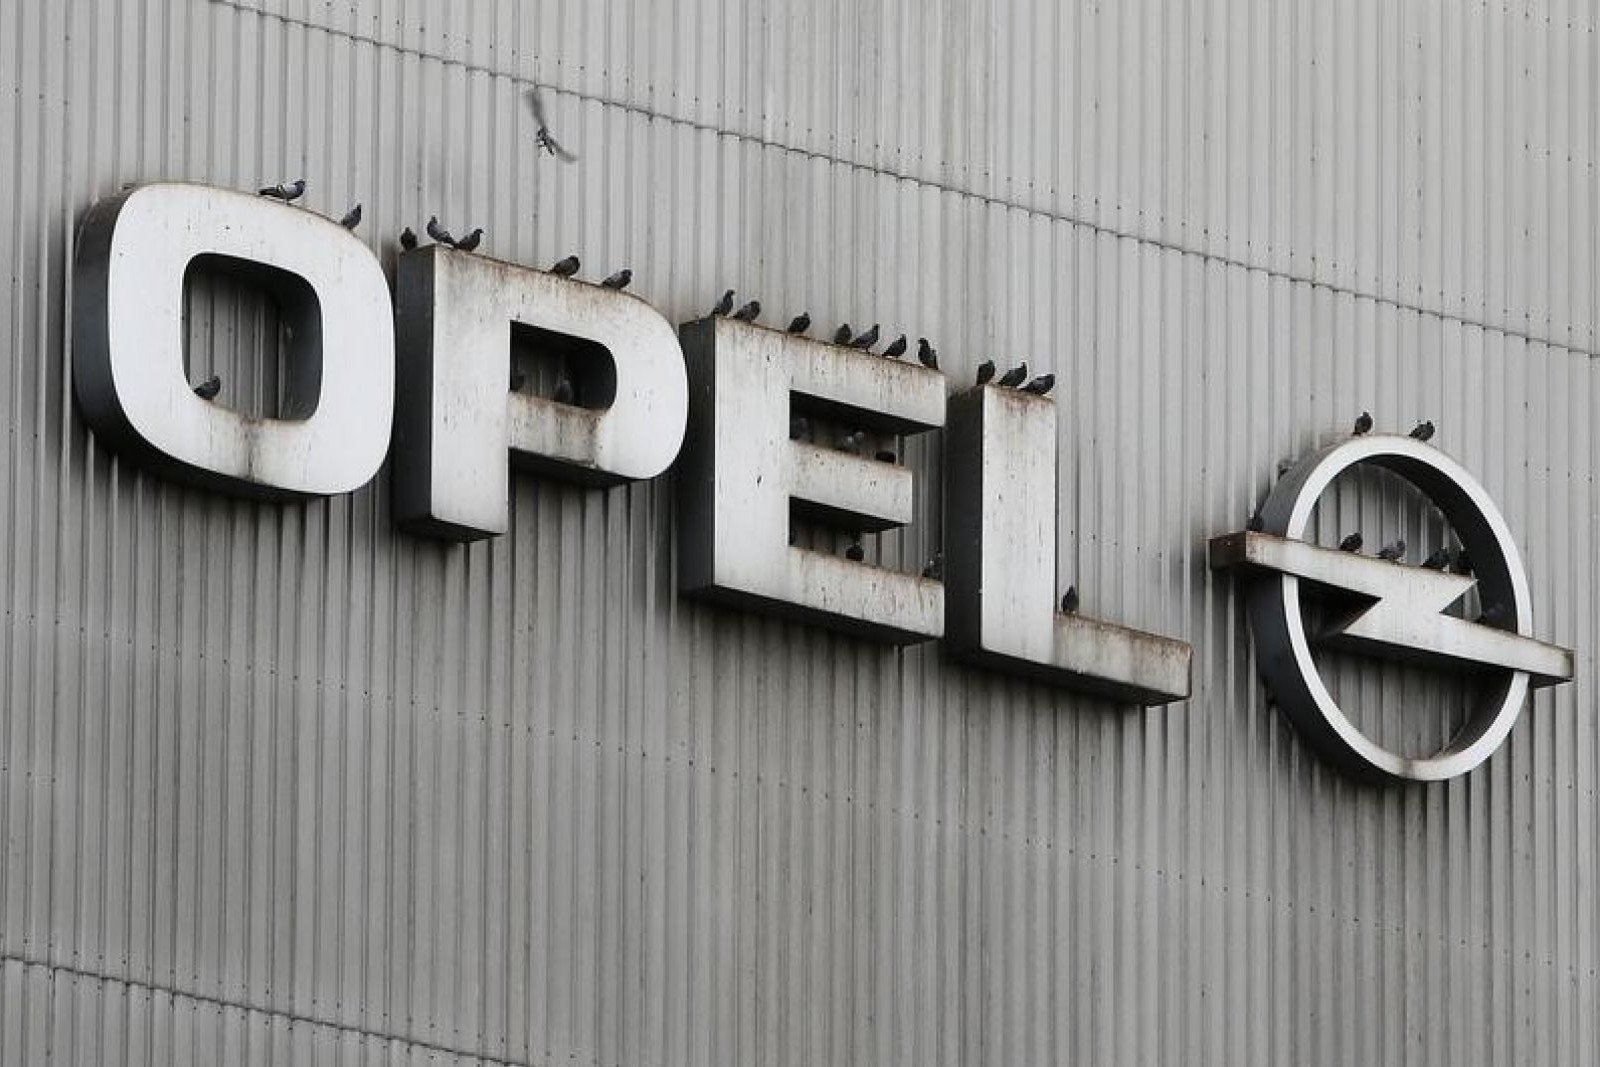 Компания opel. Opel компания. Кампаниа Опел. Концерн PSA Peugeot Citroen. Компания General Motors в Европе.